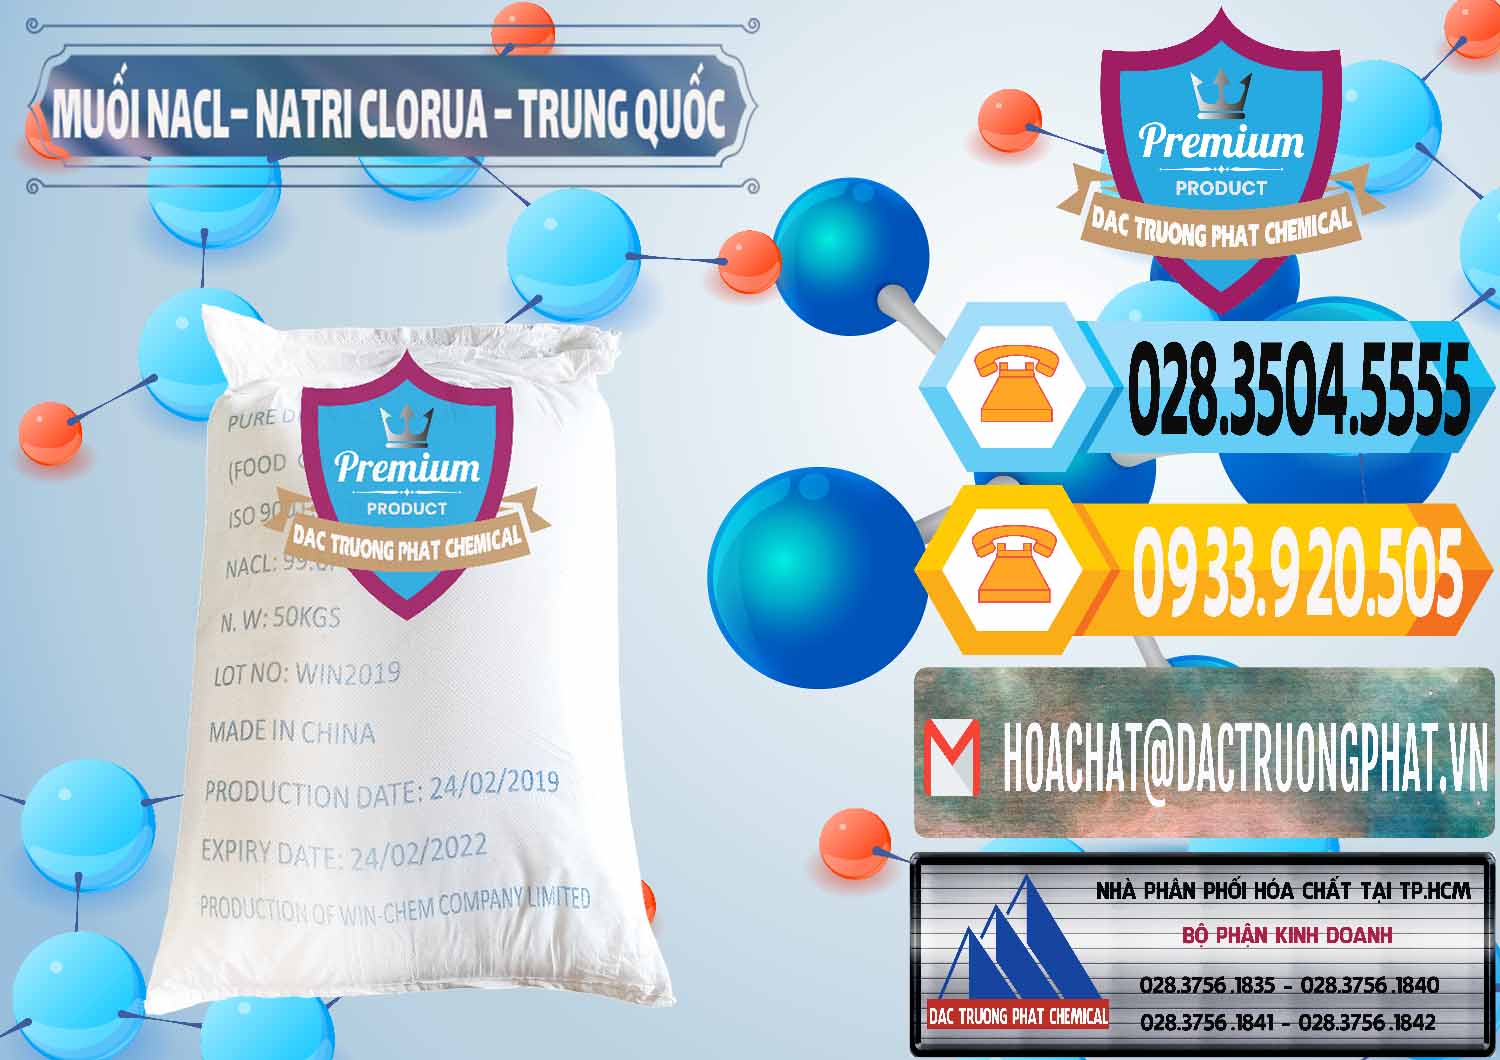 Cty bán - cung cấp Muối NaCL – Sodium Chloride Trung Quốc China - 0097 - Công ty chuyên bán & phân phối hóa chất tại TP.HCM - hoachattayrua.net